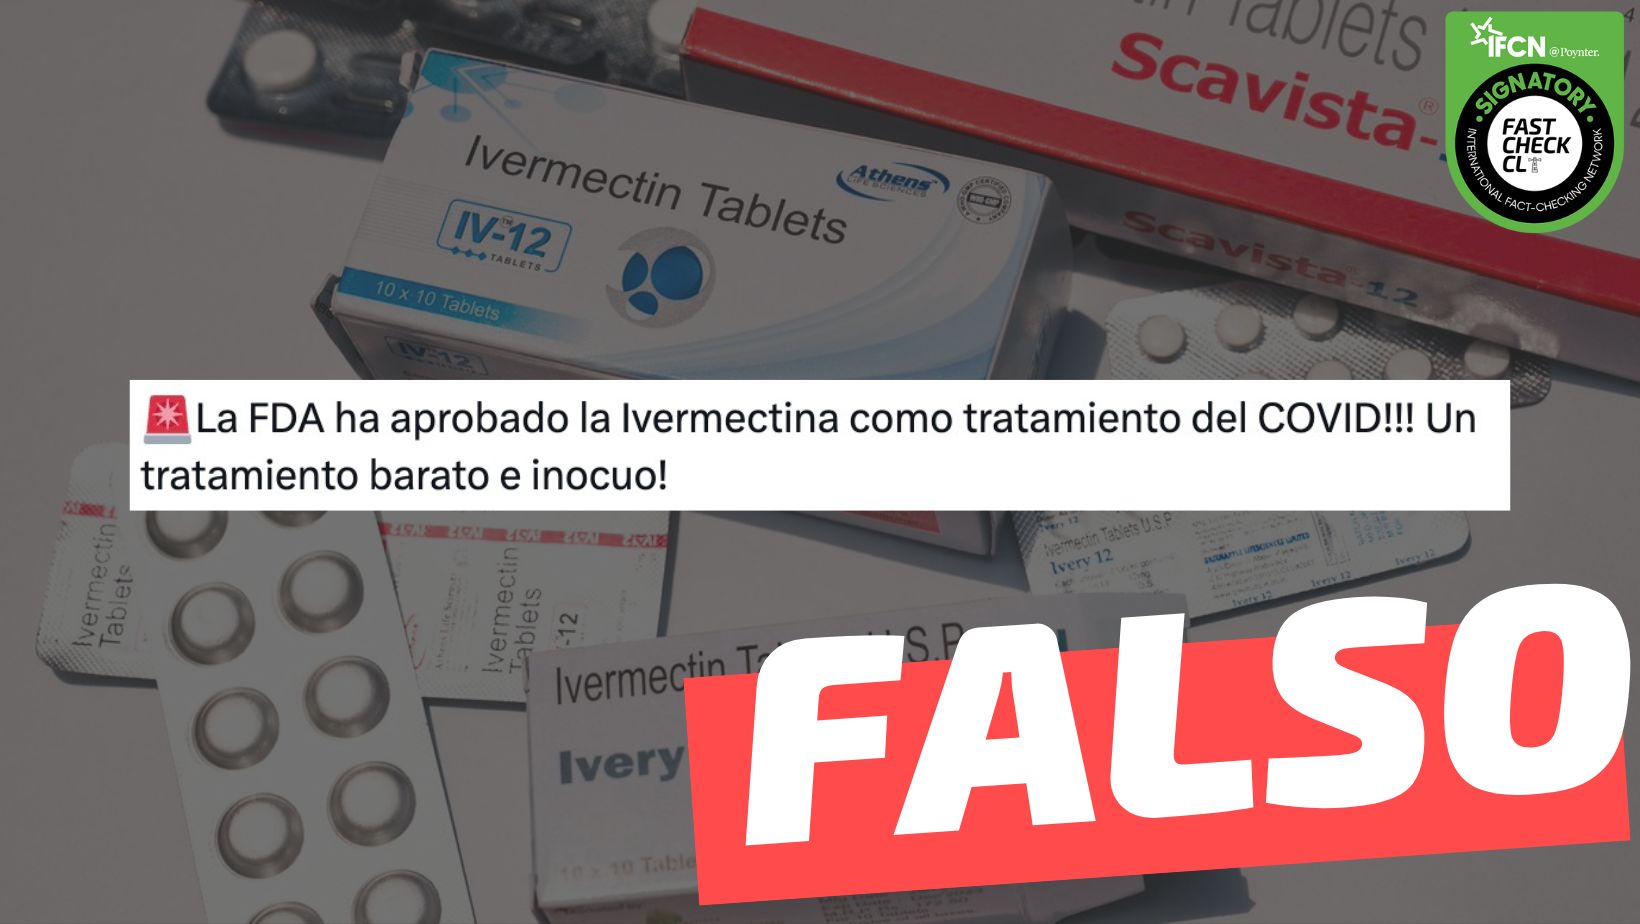 You are currently viewing “La FDA ha aprobado la ivermectina como tratamiento contra el covid”: #Falso